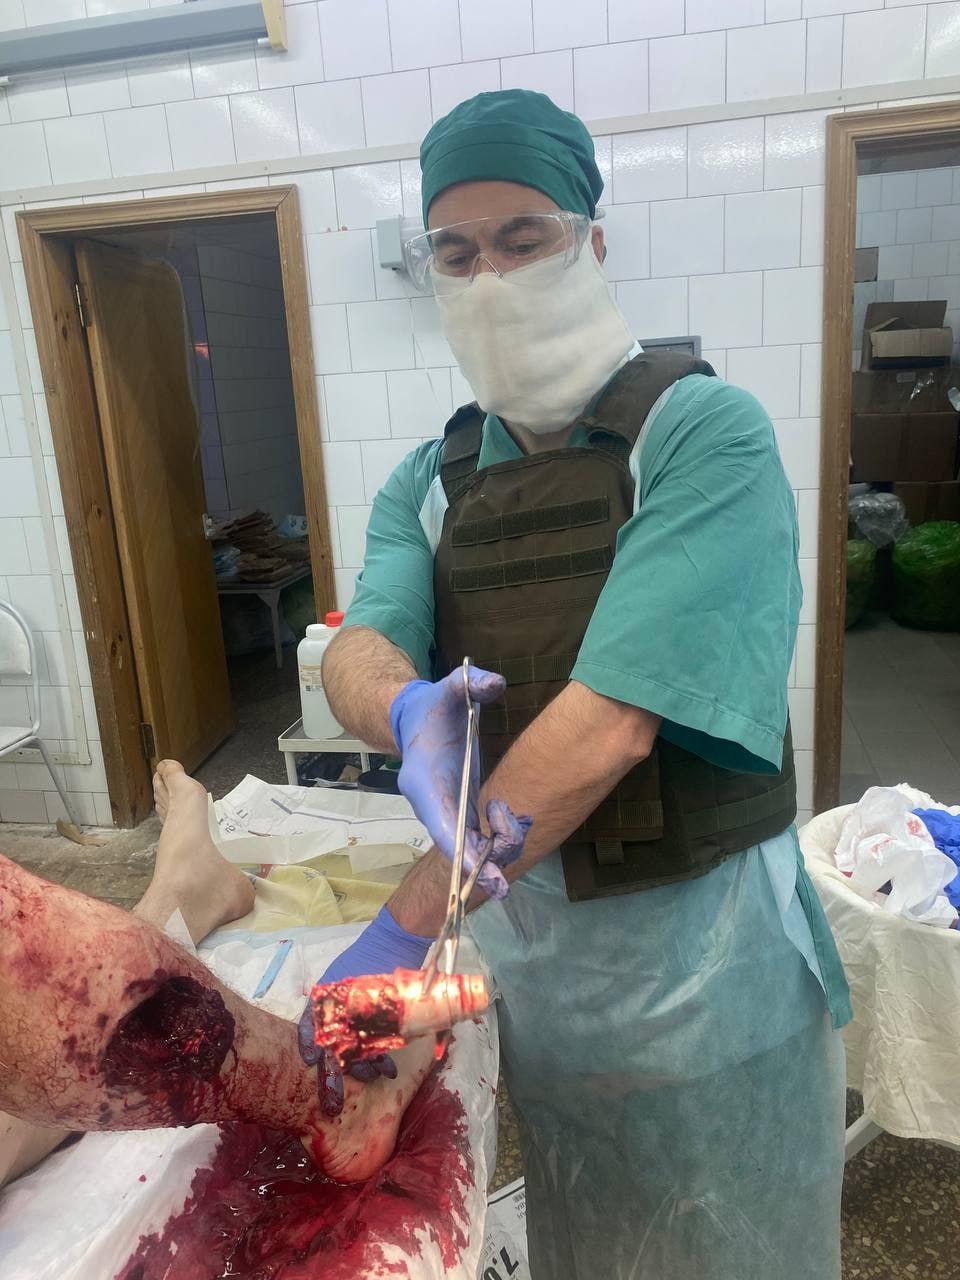 Оперировали в бронежилетах: в Белгородской области хирурги извлекли из ноги военного торцевой взрыватель мины